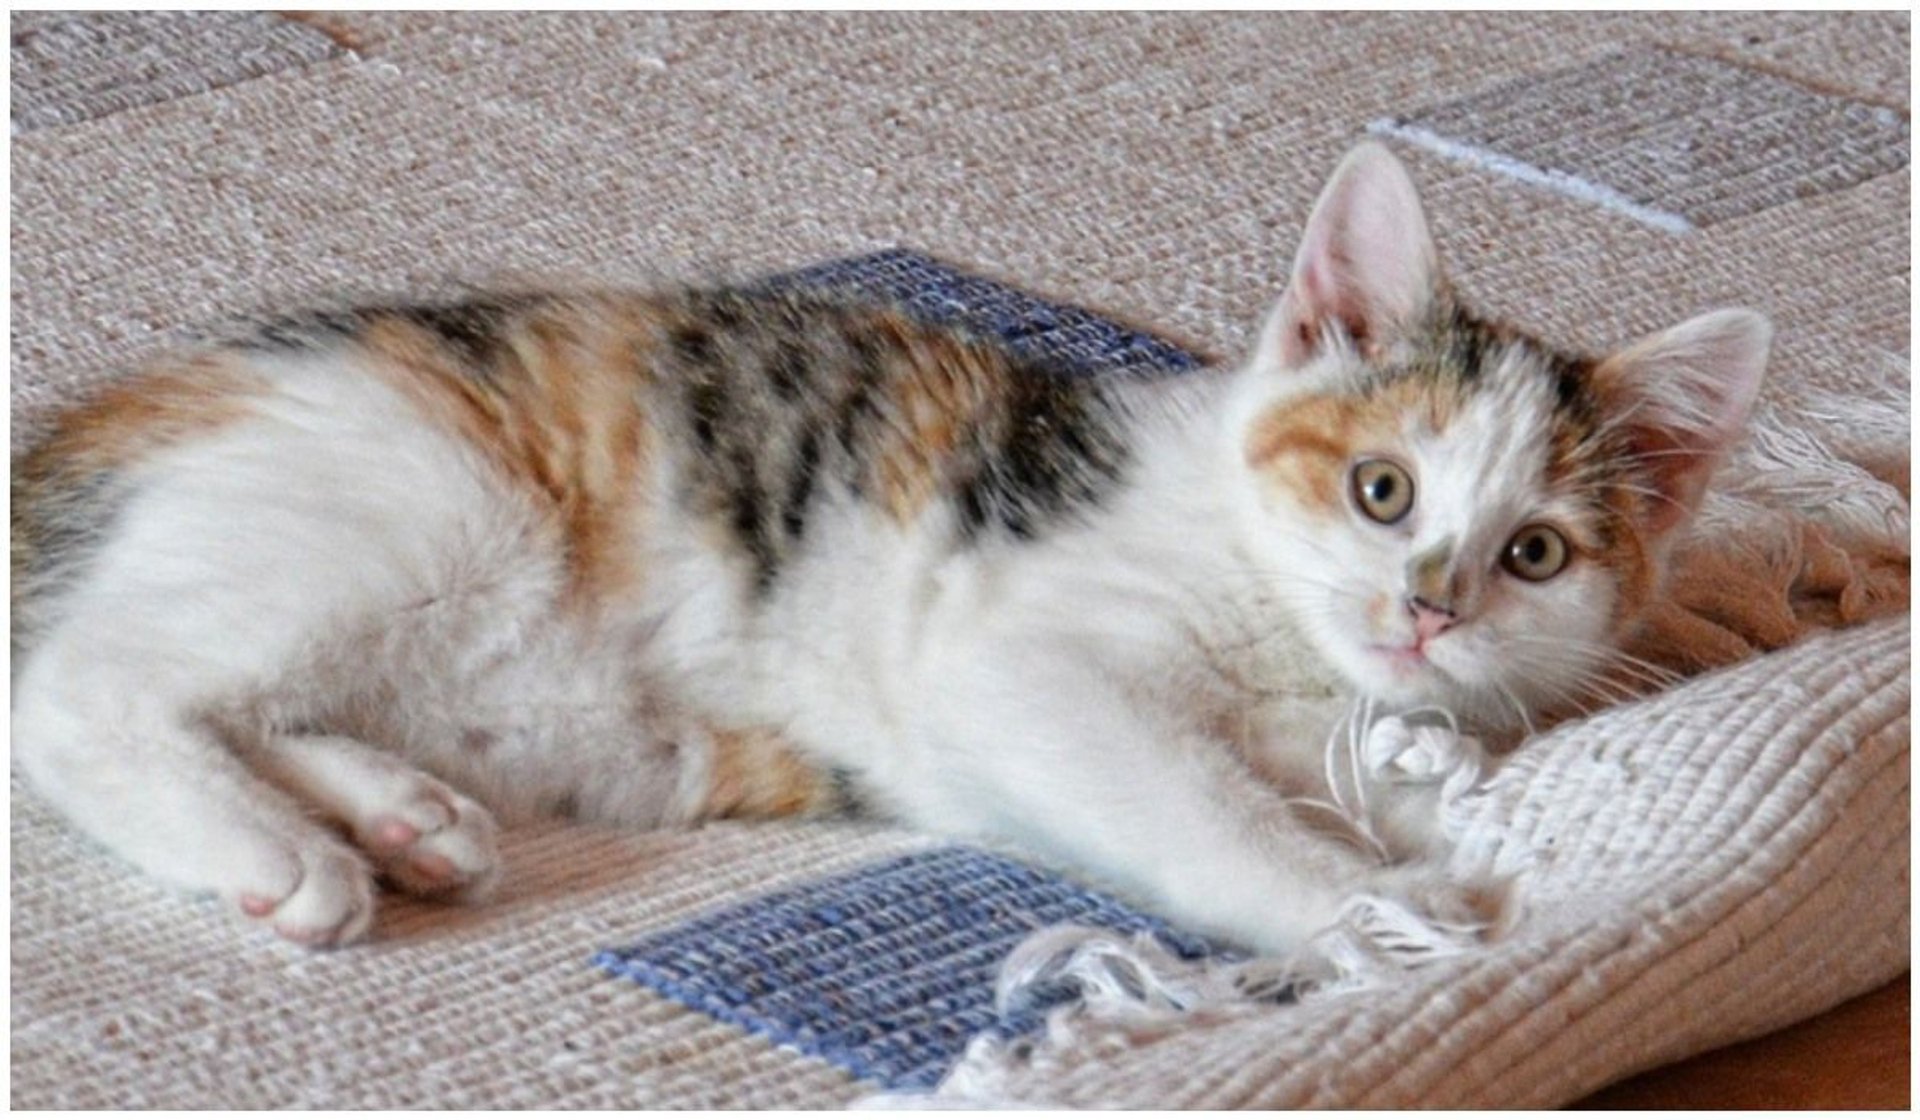 Kot drapie i gryzie dywan bez przerwy. Tylko on jeden wie, co grozi jego rodzinie